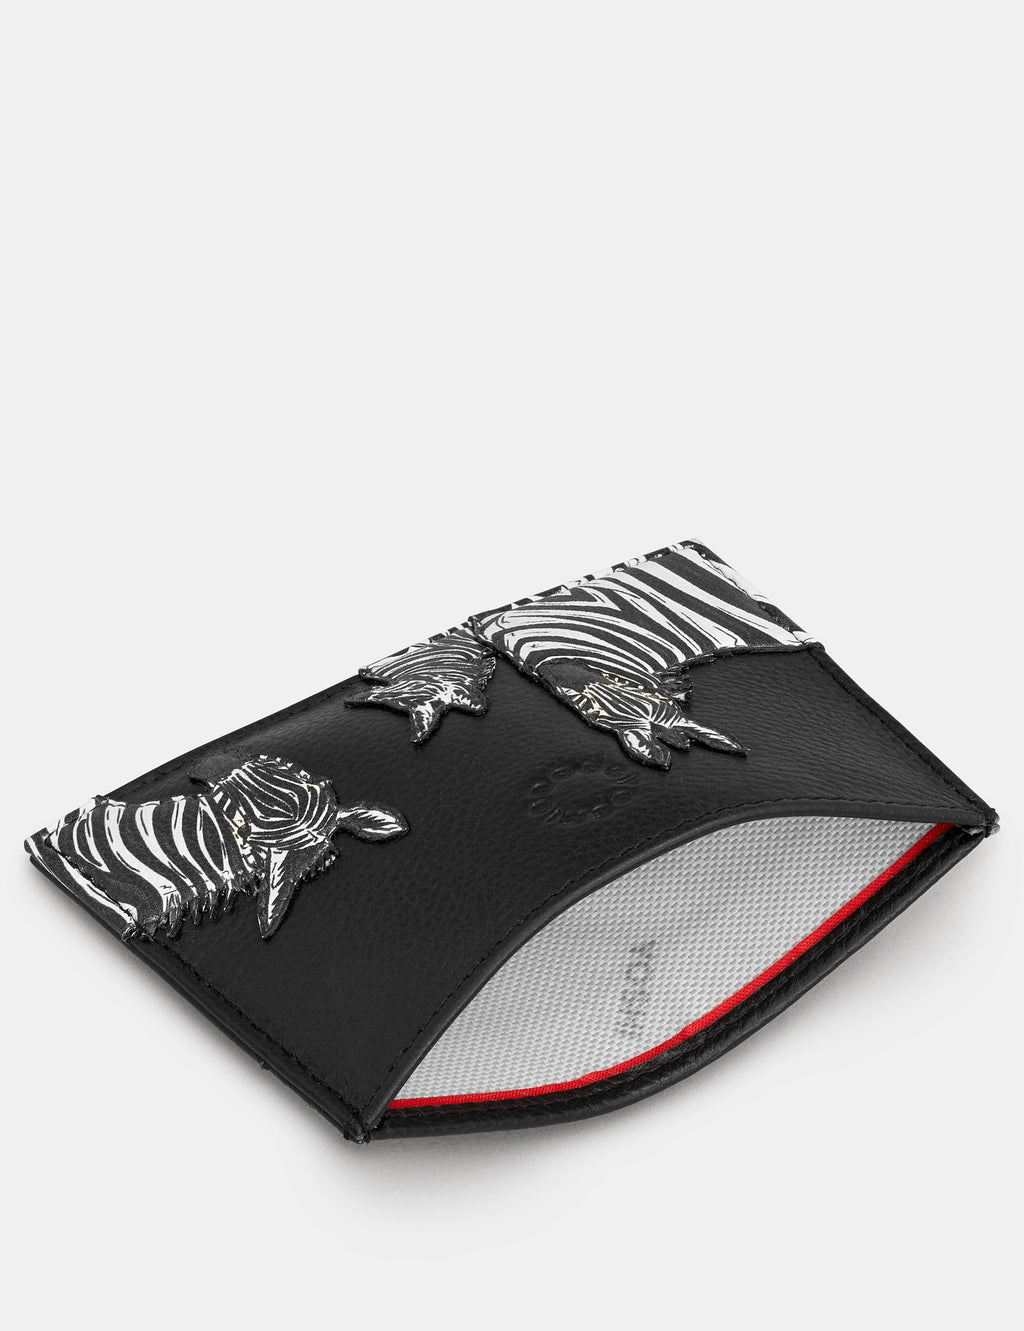 Yoshi - Black Zebra Card Holder RFID